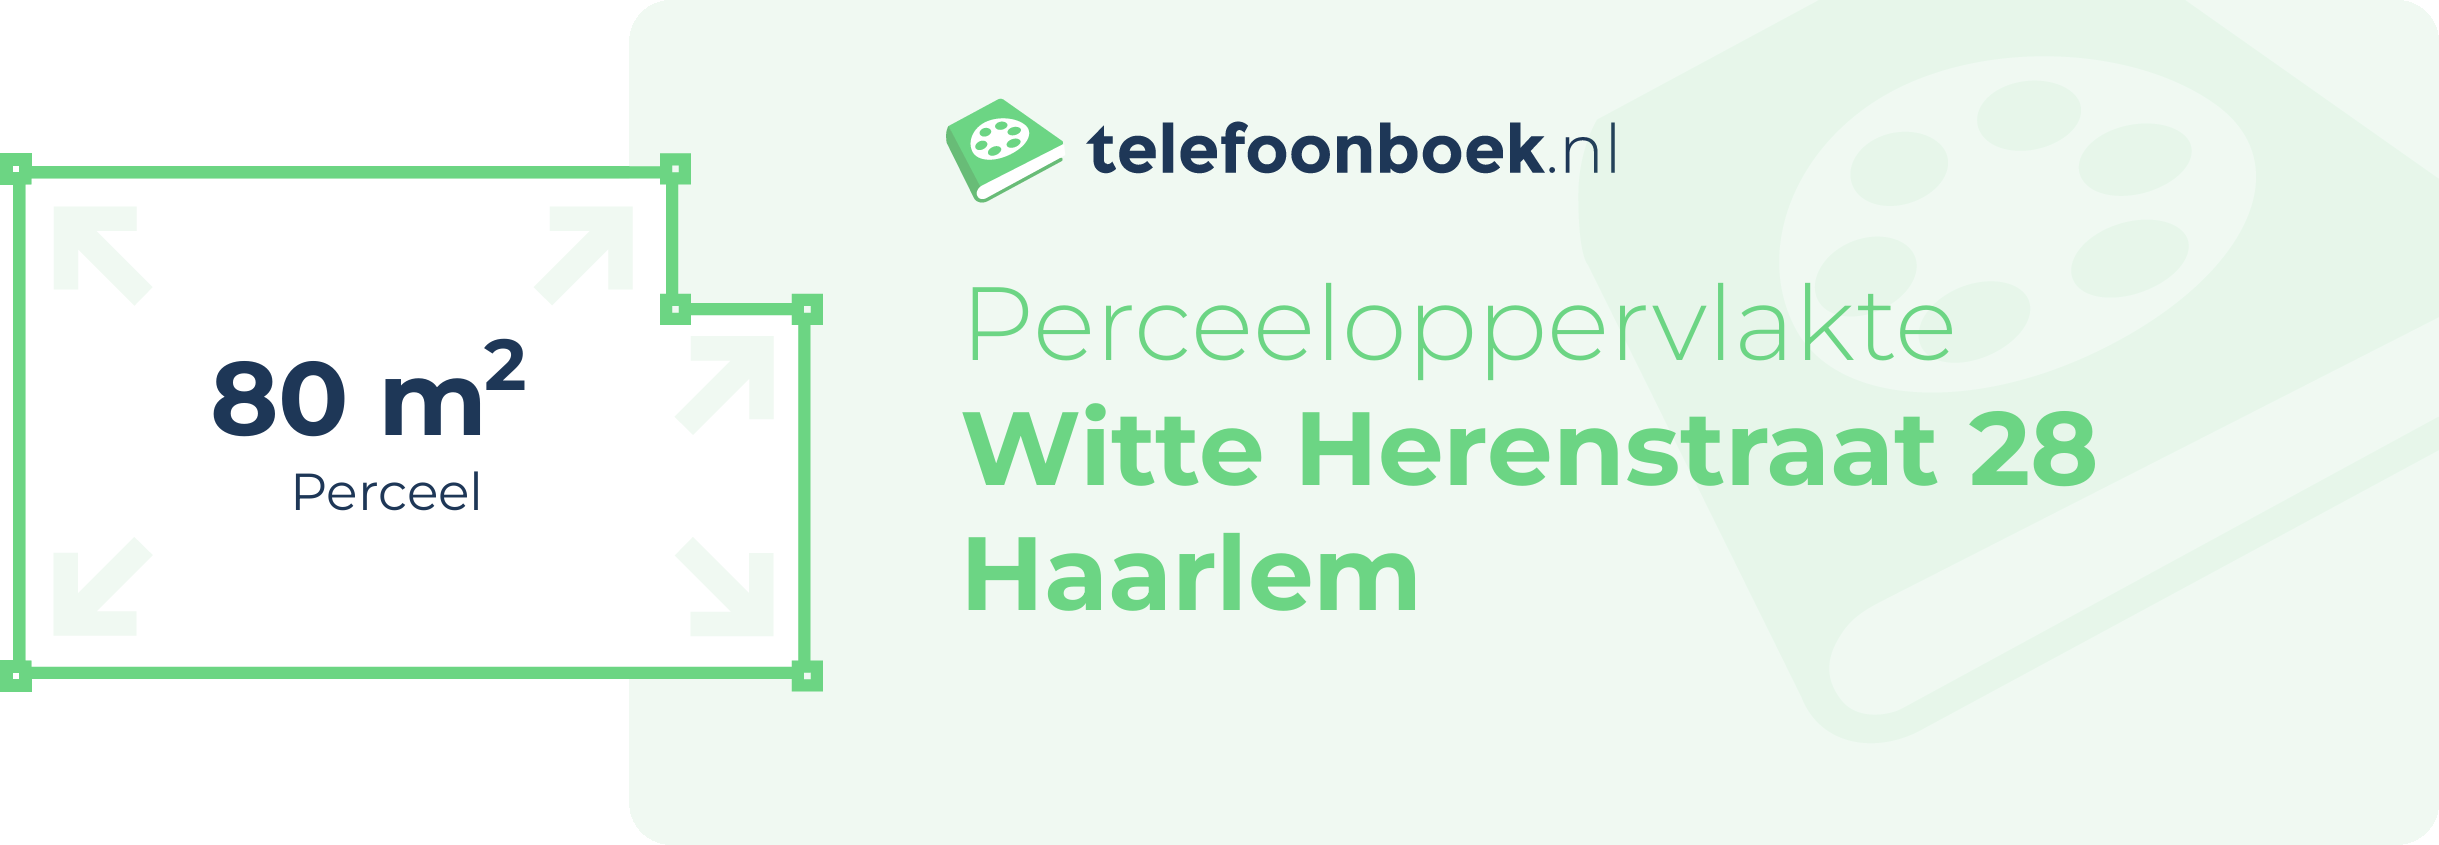 Perceeloppervlakte Witte Herenstraat 28 Haarlem